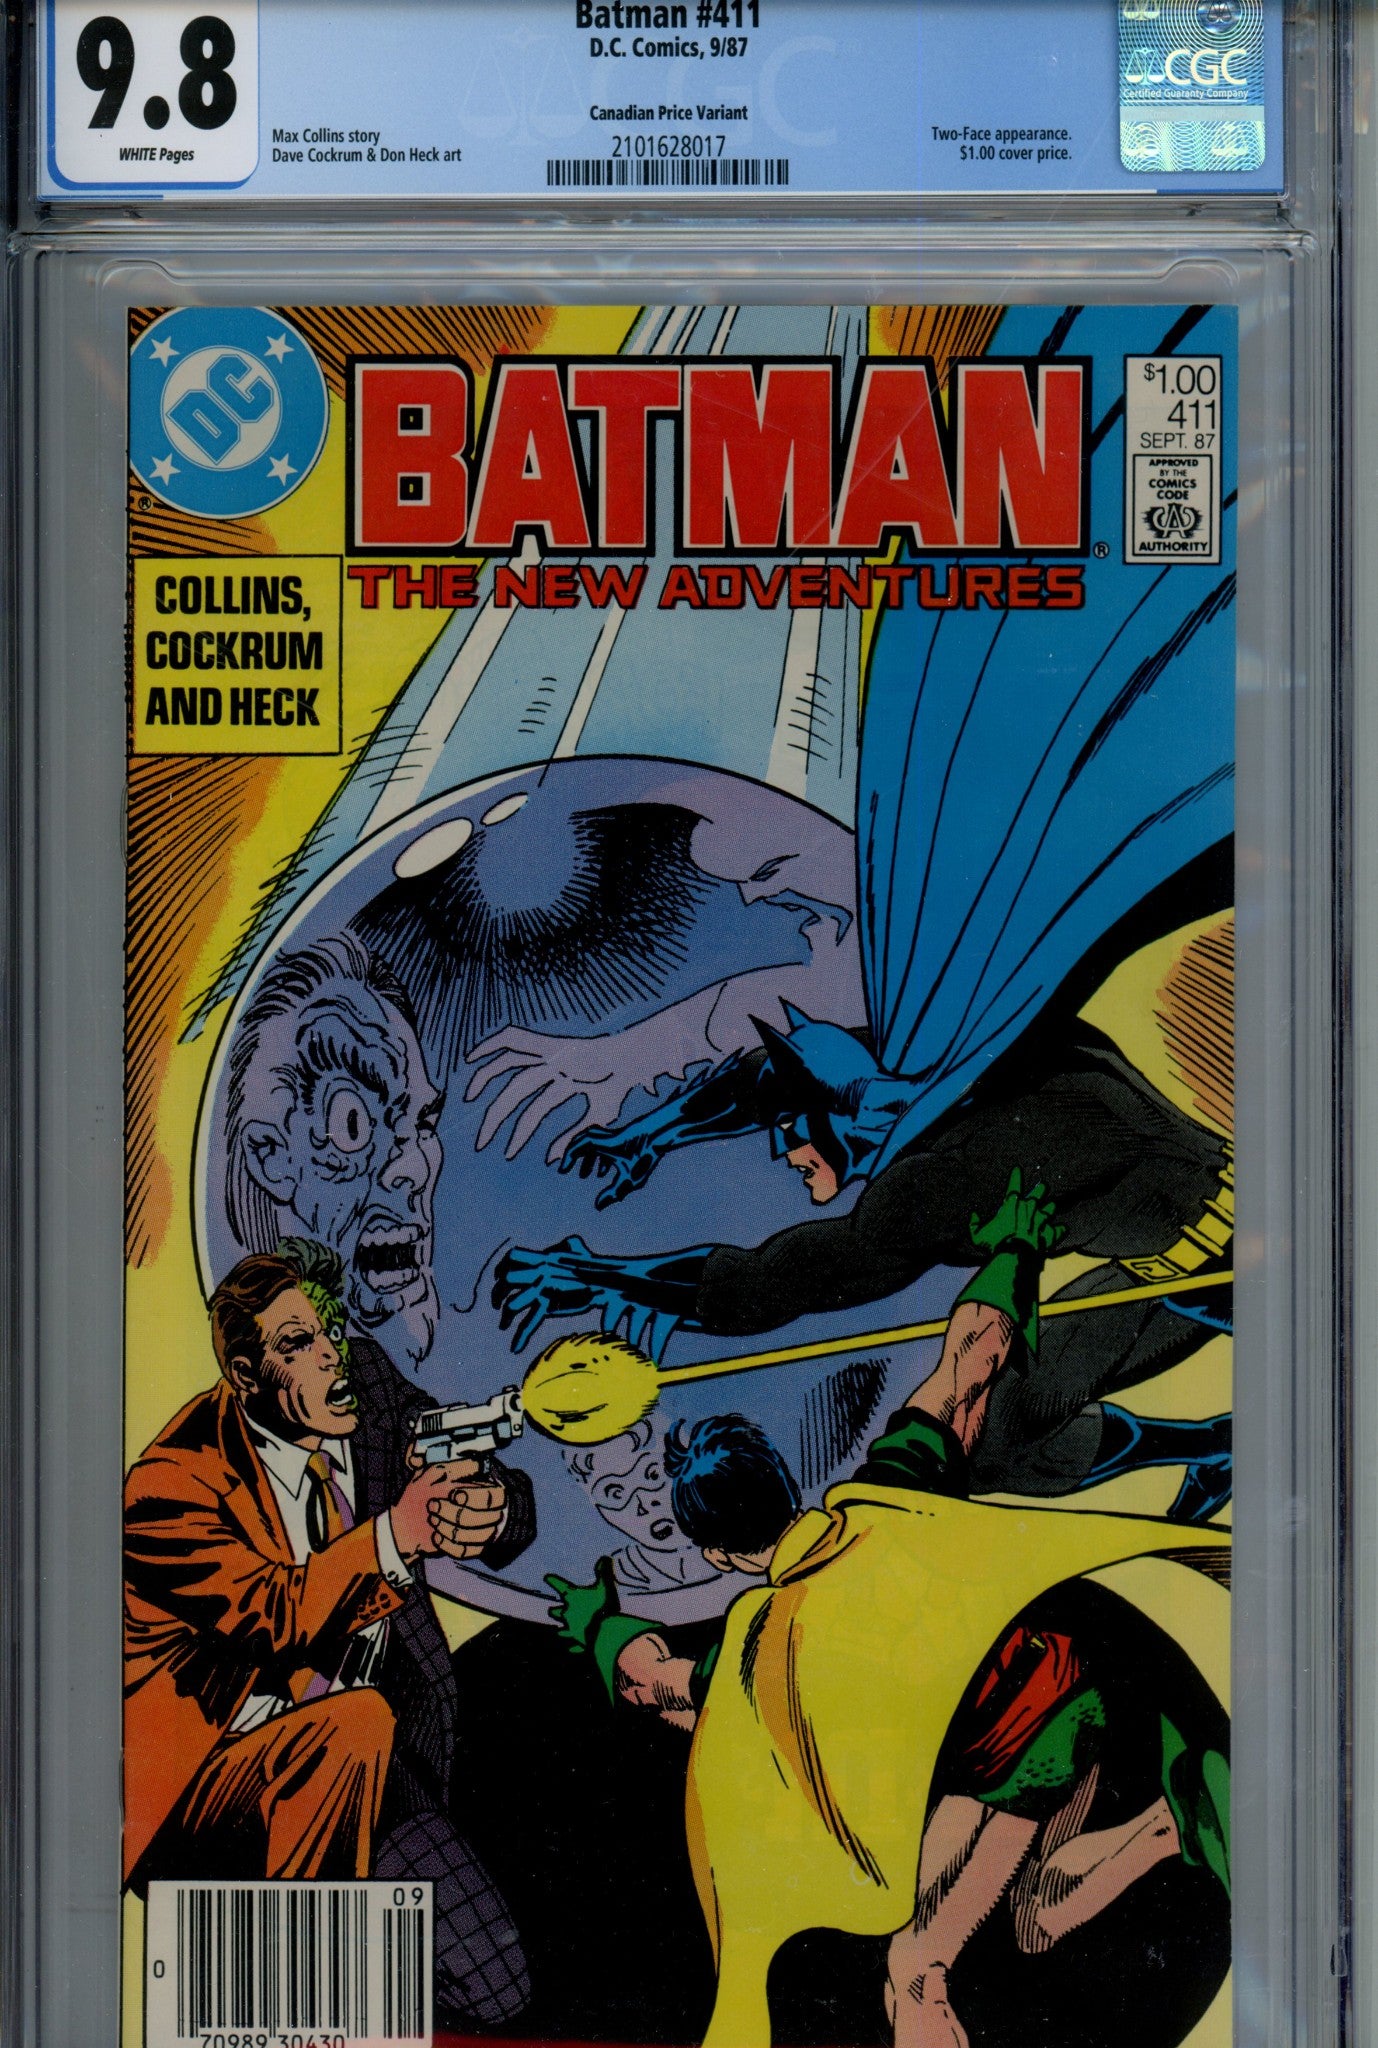 Batman Vol 1 411 CGC 9.8 (1987)